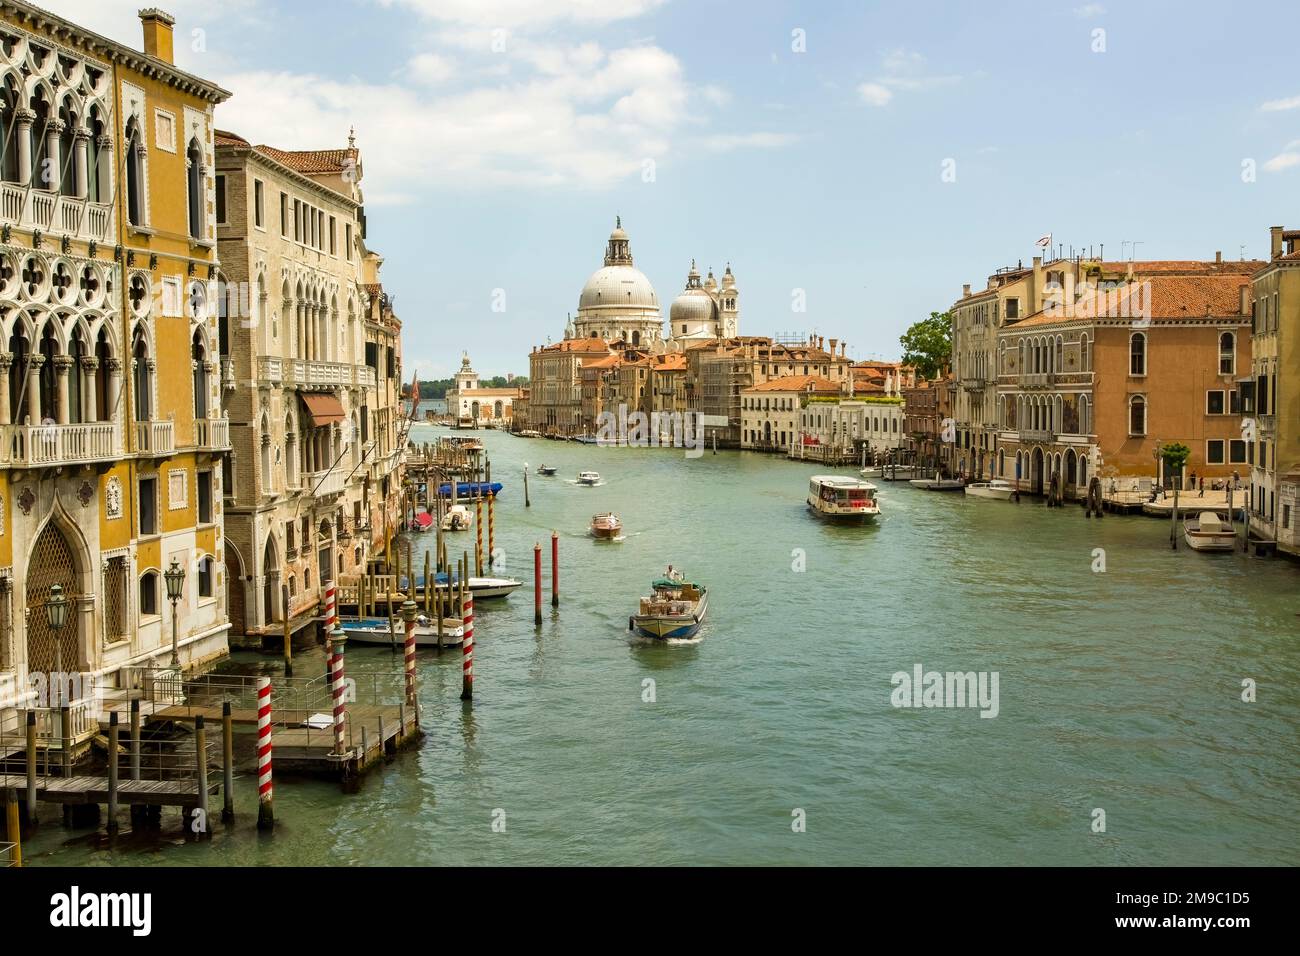 Basilica of Santa Maria della Salute and the Grand Canal, Venice, Italy Stock Photo